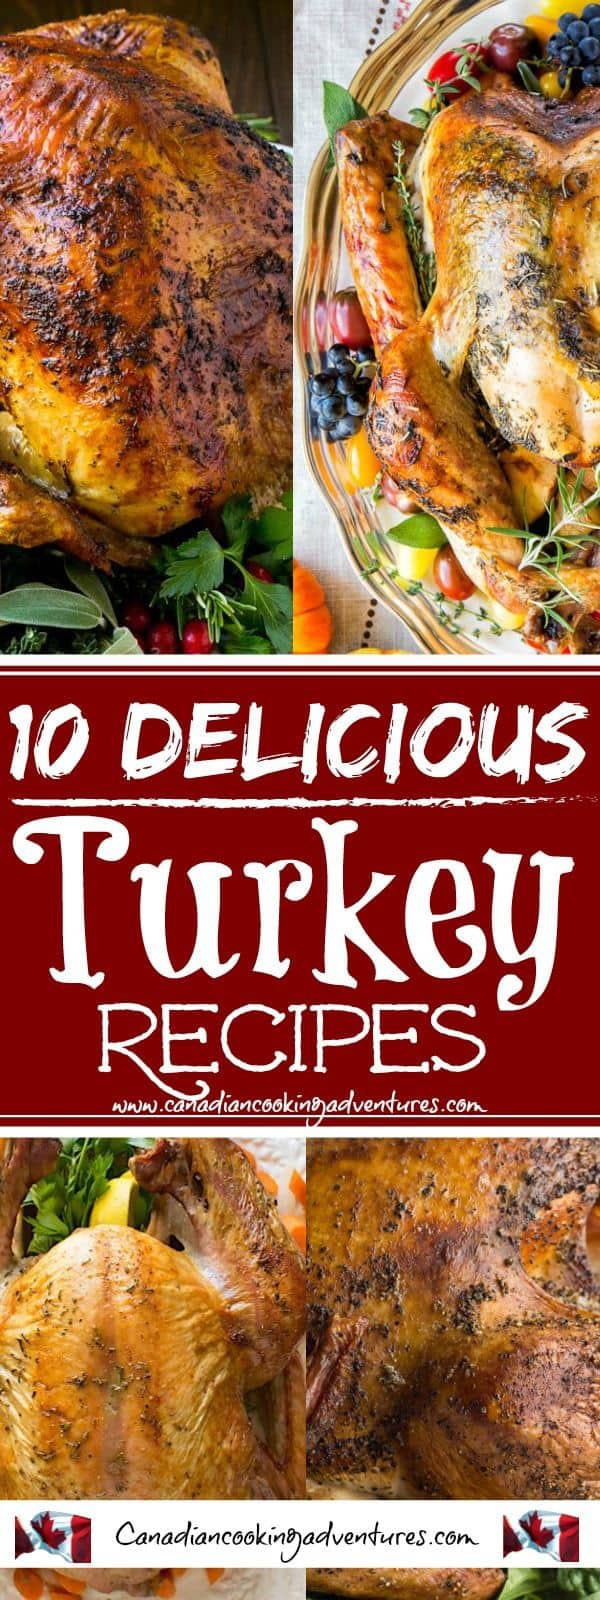 10 Delicious Turkey Recipes